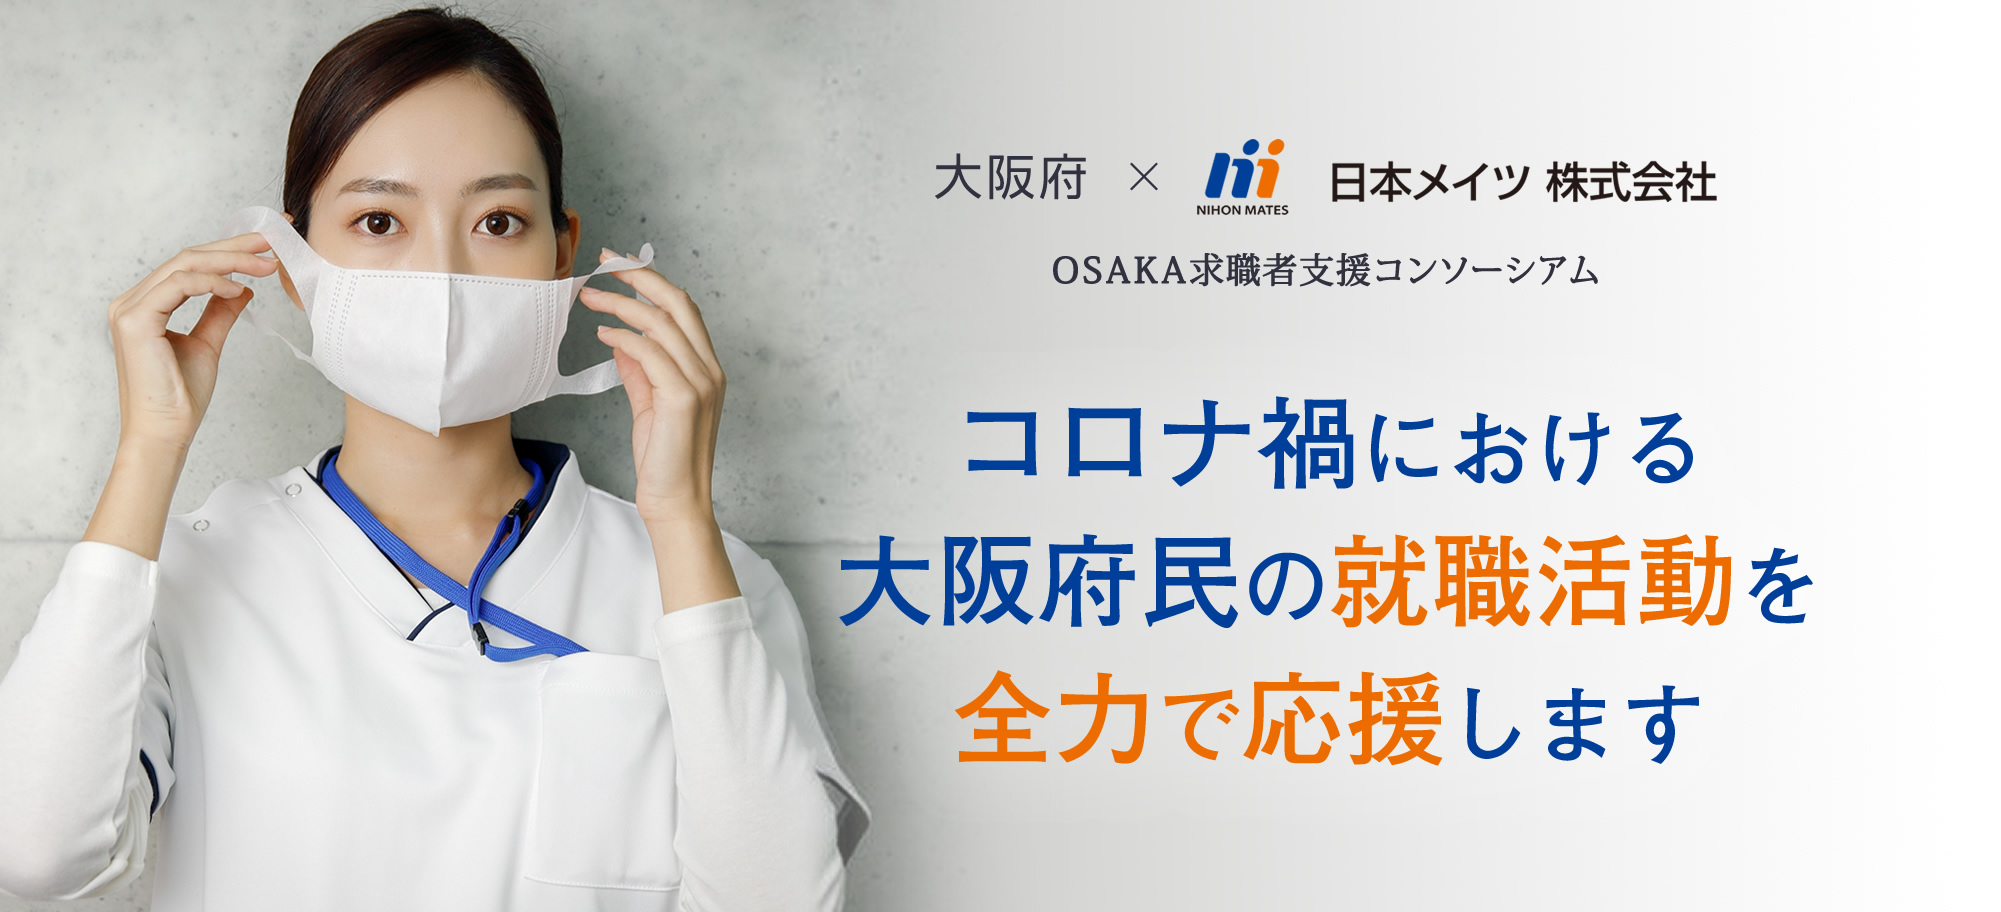 日本メイツ株式会社は「OSAKA求職者支援コンソーシアム」に賛同・協力しています